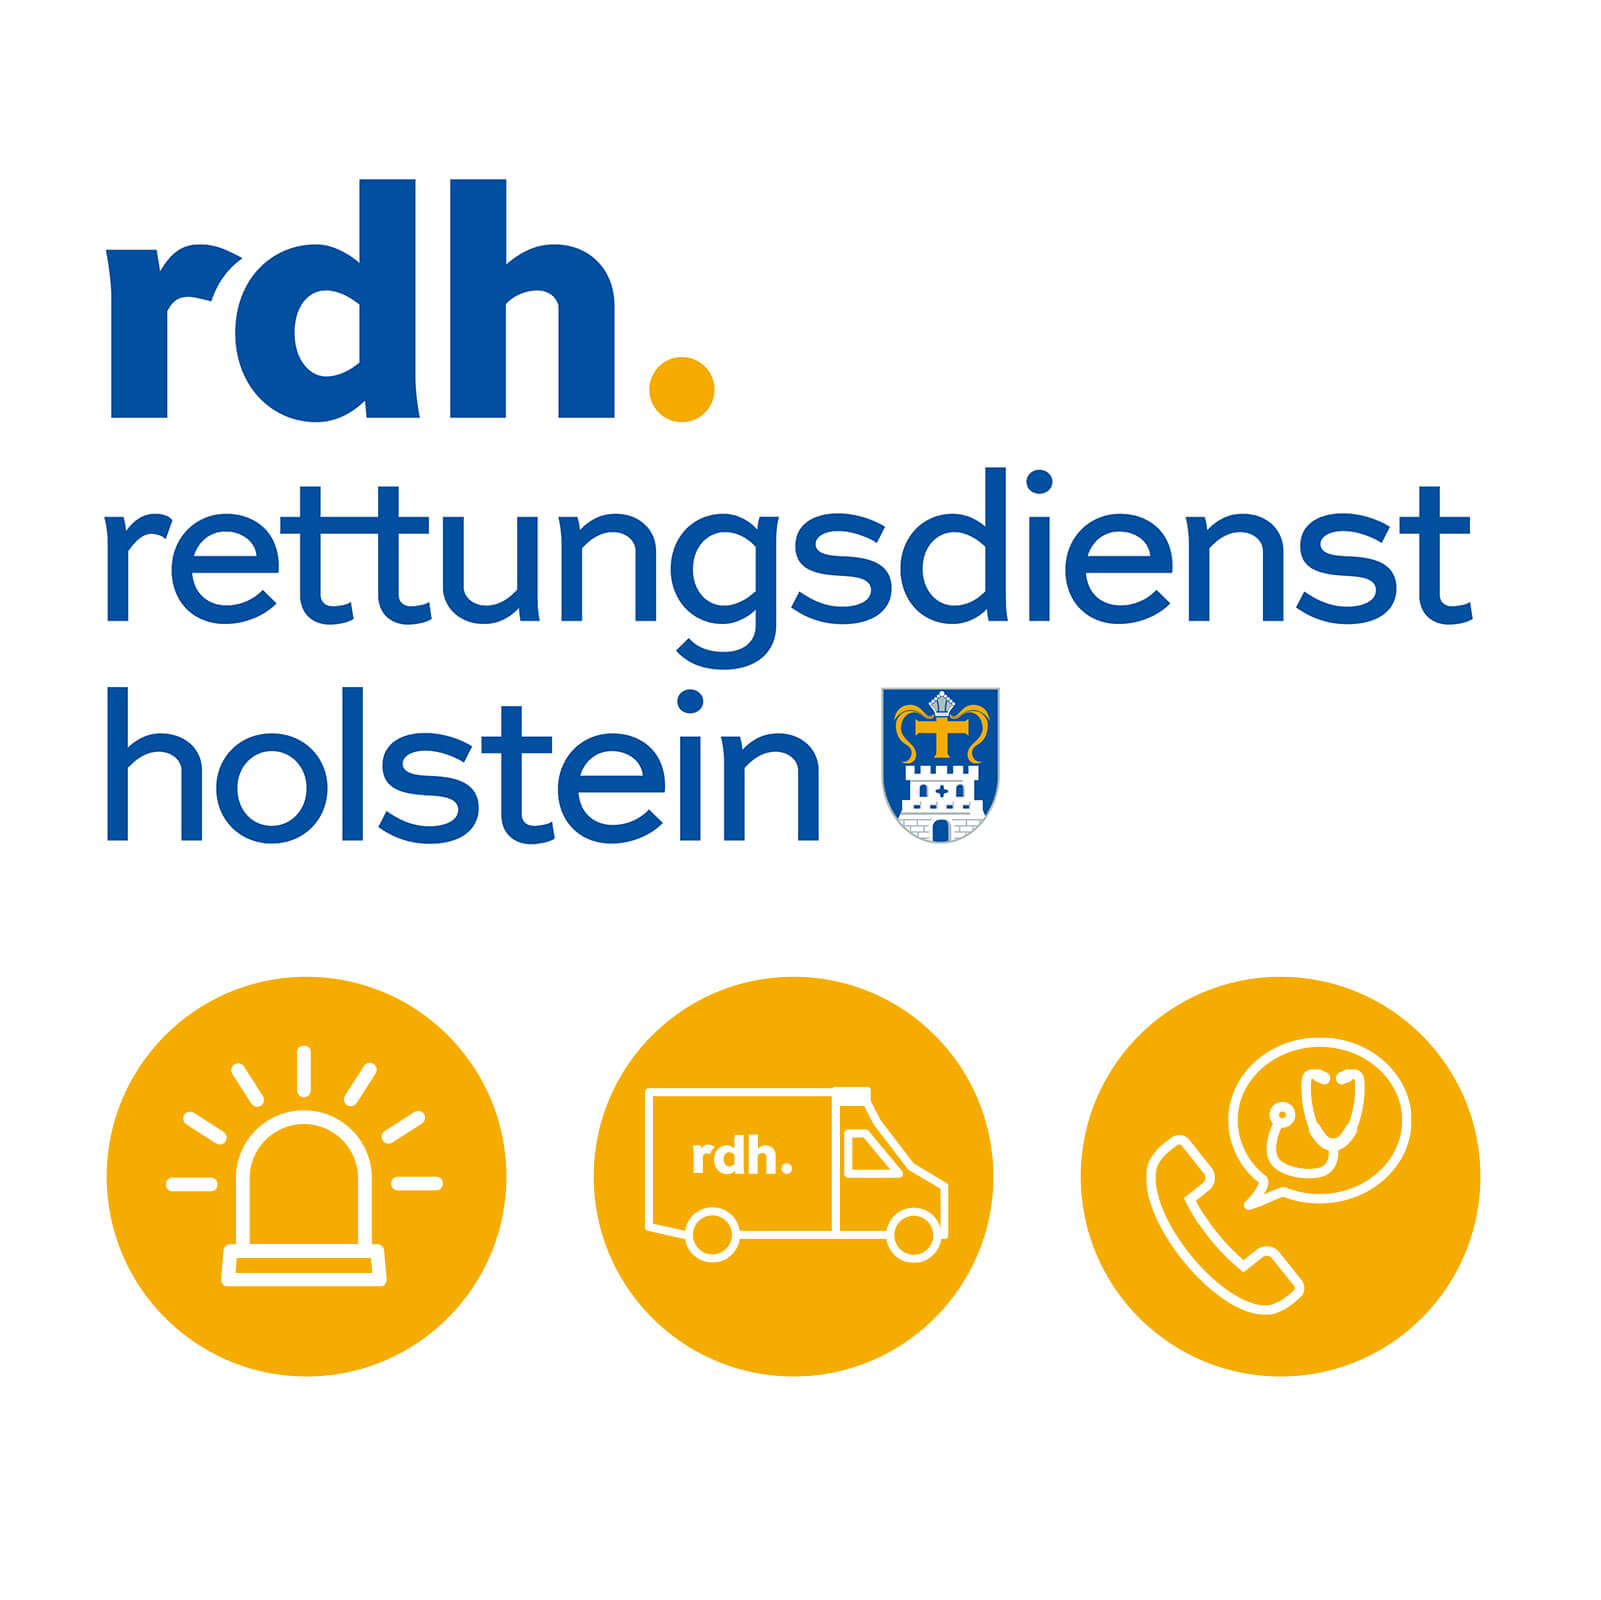 Kuki Design Rettungsdienst Holstein Vorschau Markenauftritt Logogestaltung Webdesign Umsetzung Corporate Design